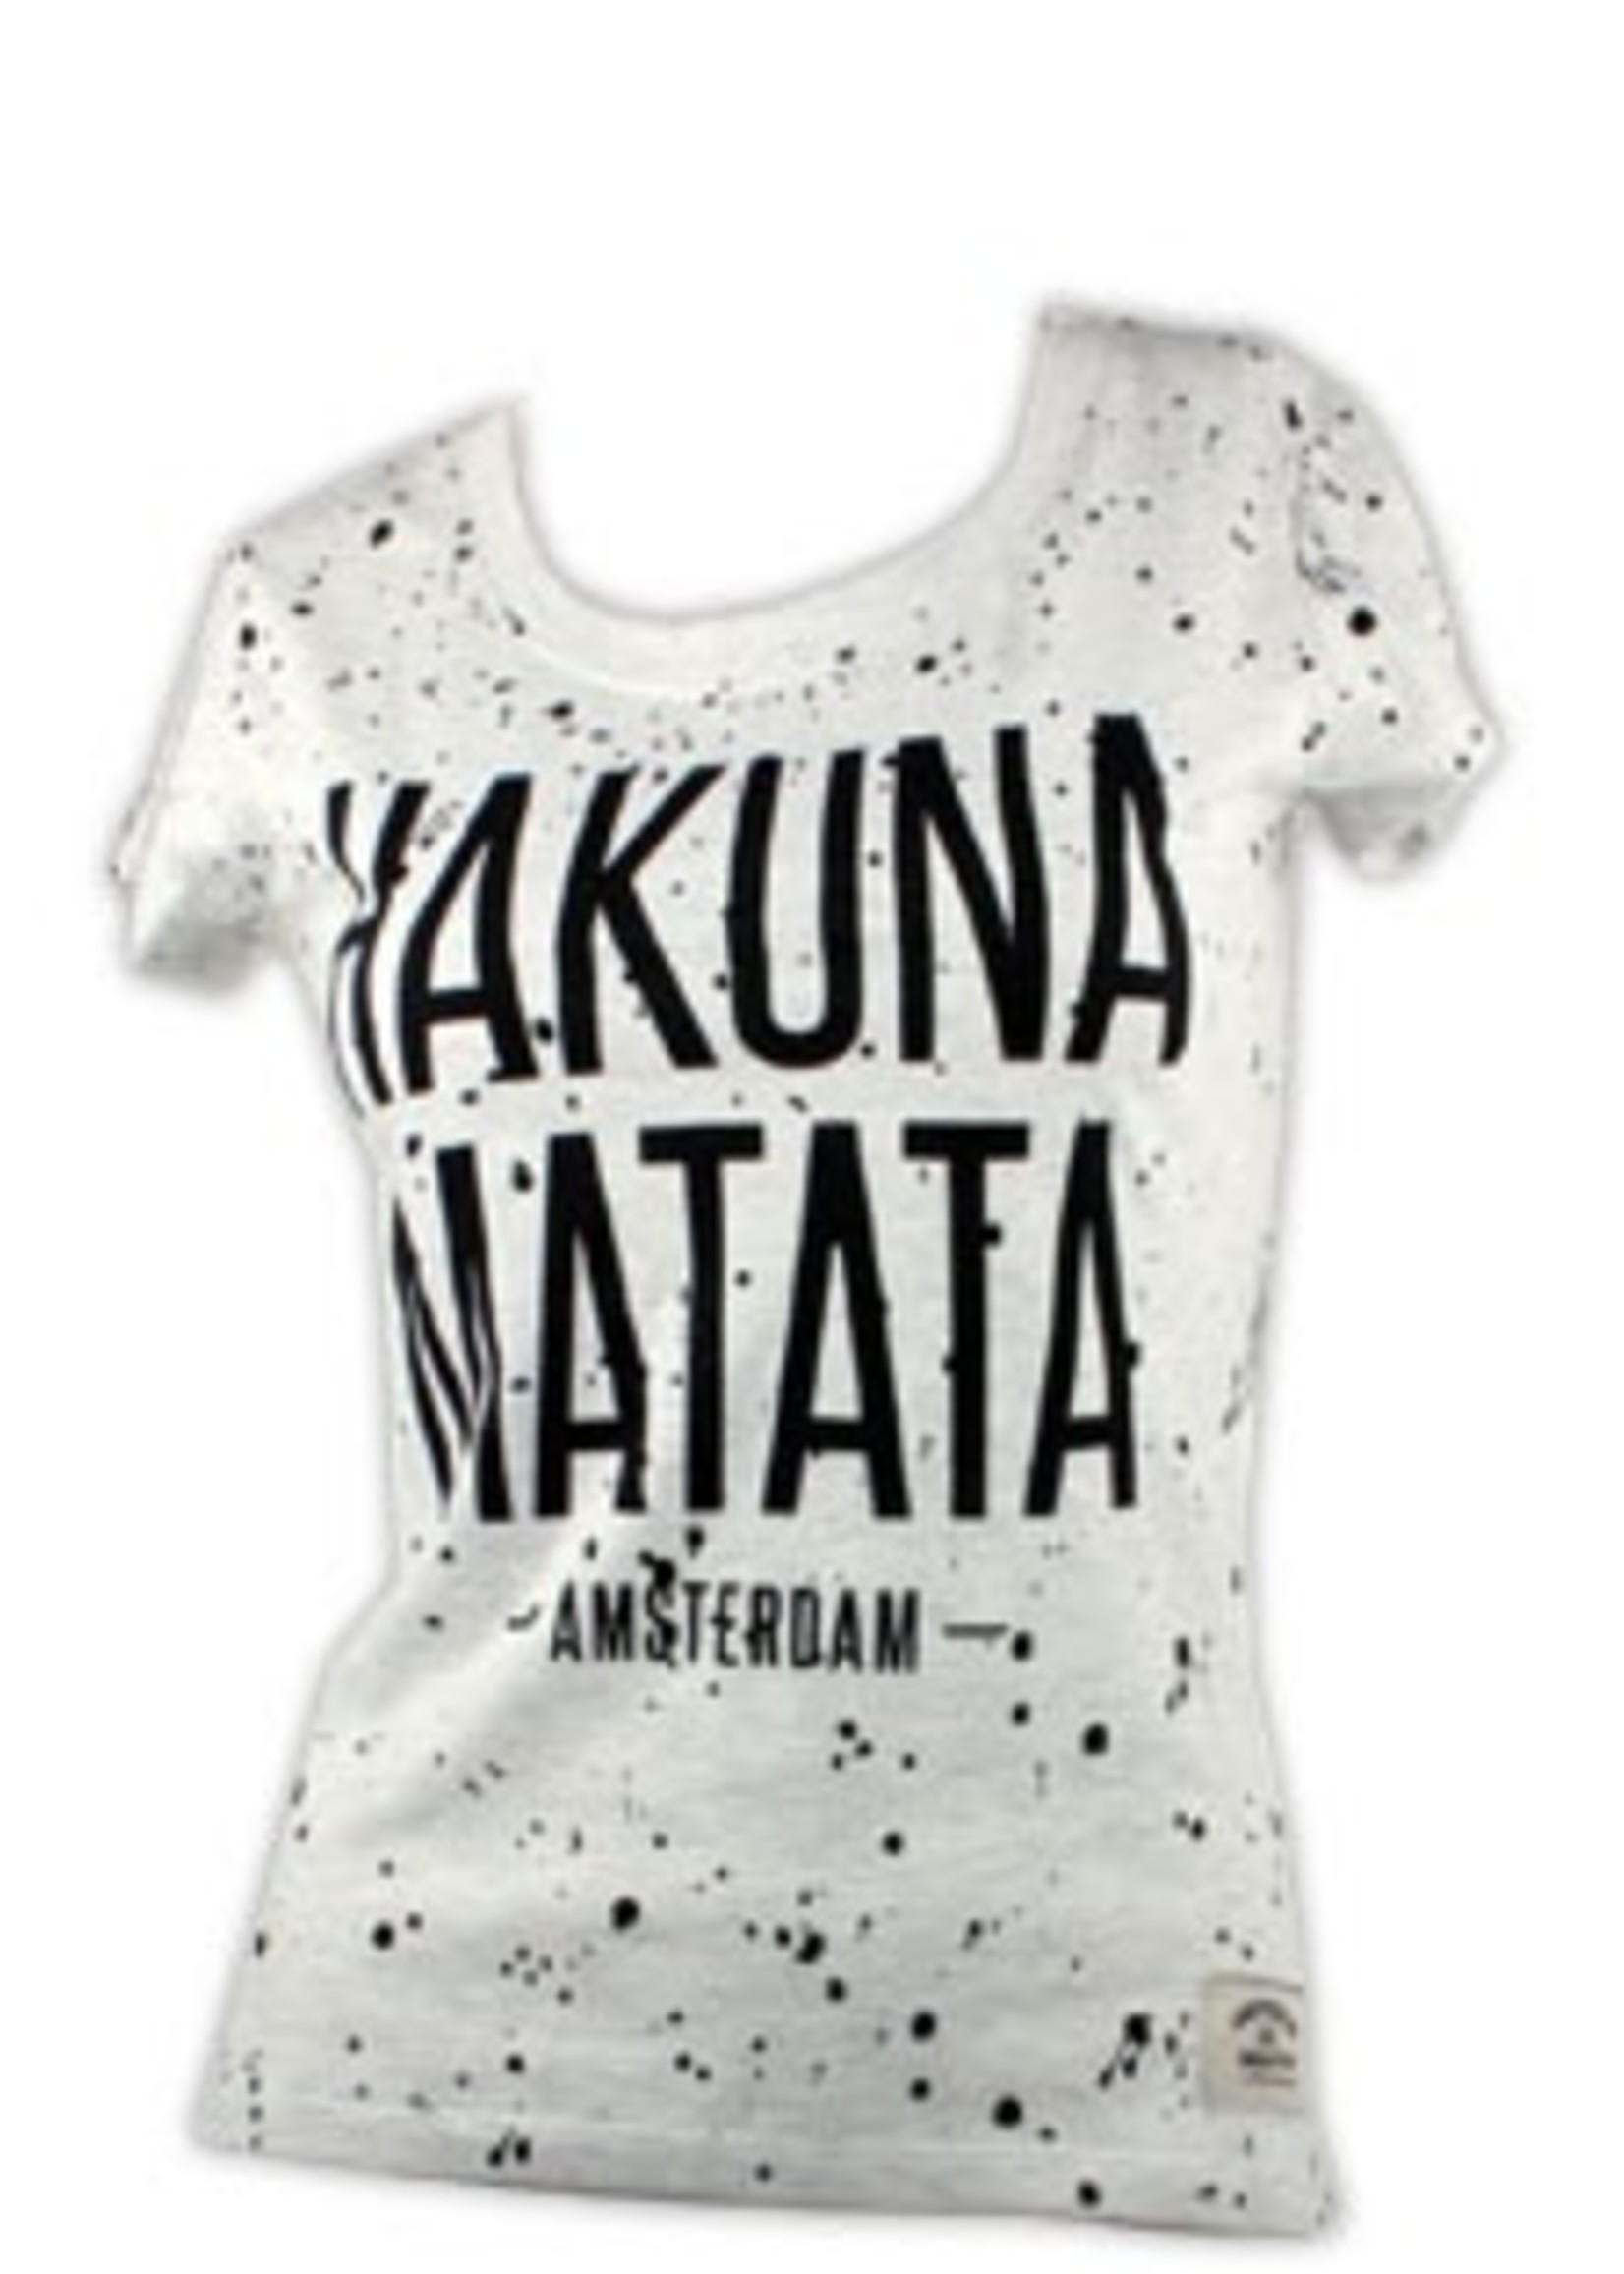 T-shirt Hakuna Matata Zwart/Wit